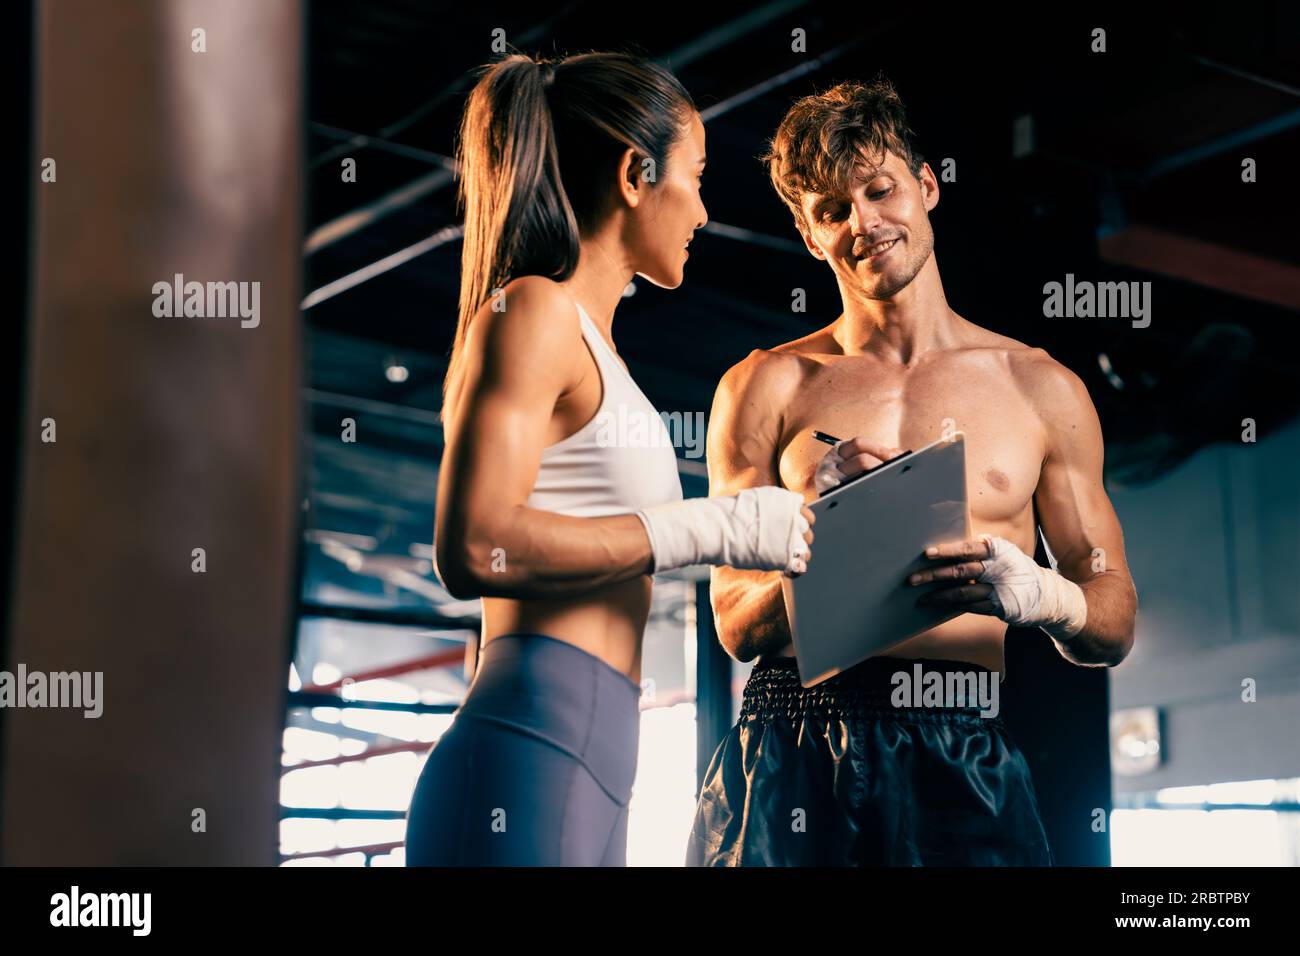 Eine asiatische Muay Thai-Boxerin und ihr persönlicher Boxtrainer diskutieren über ihren körperlichen Fortschritt im Fitnessstudio, der die Bindung an ihre Körpermuskulatur widerspiegelt Stockfoto